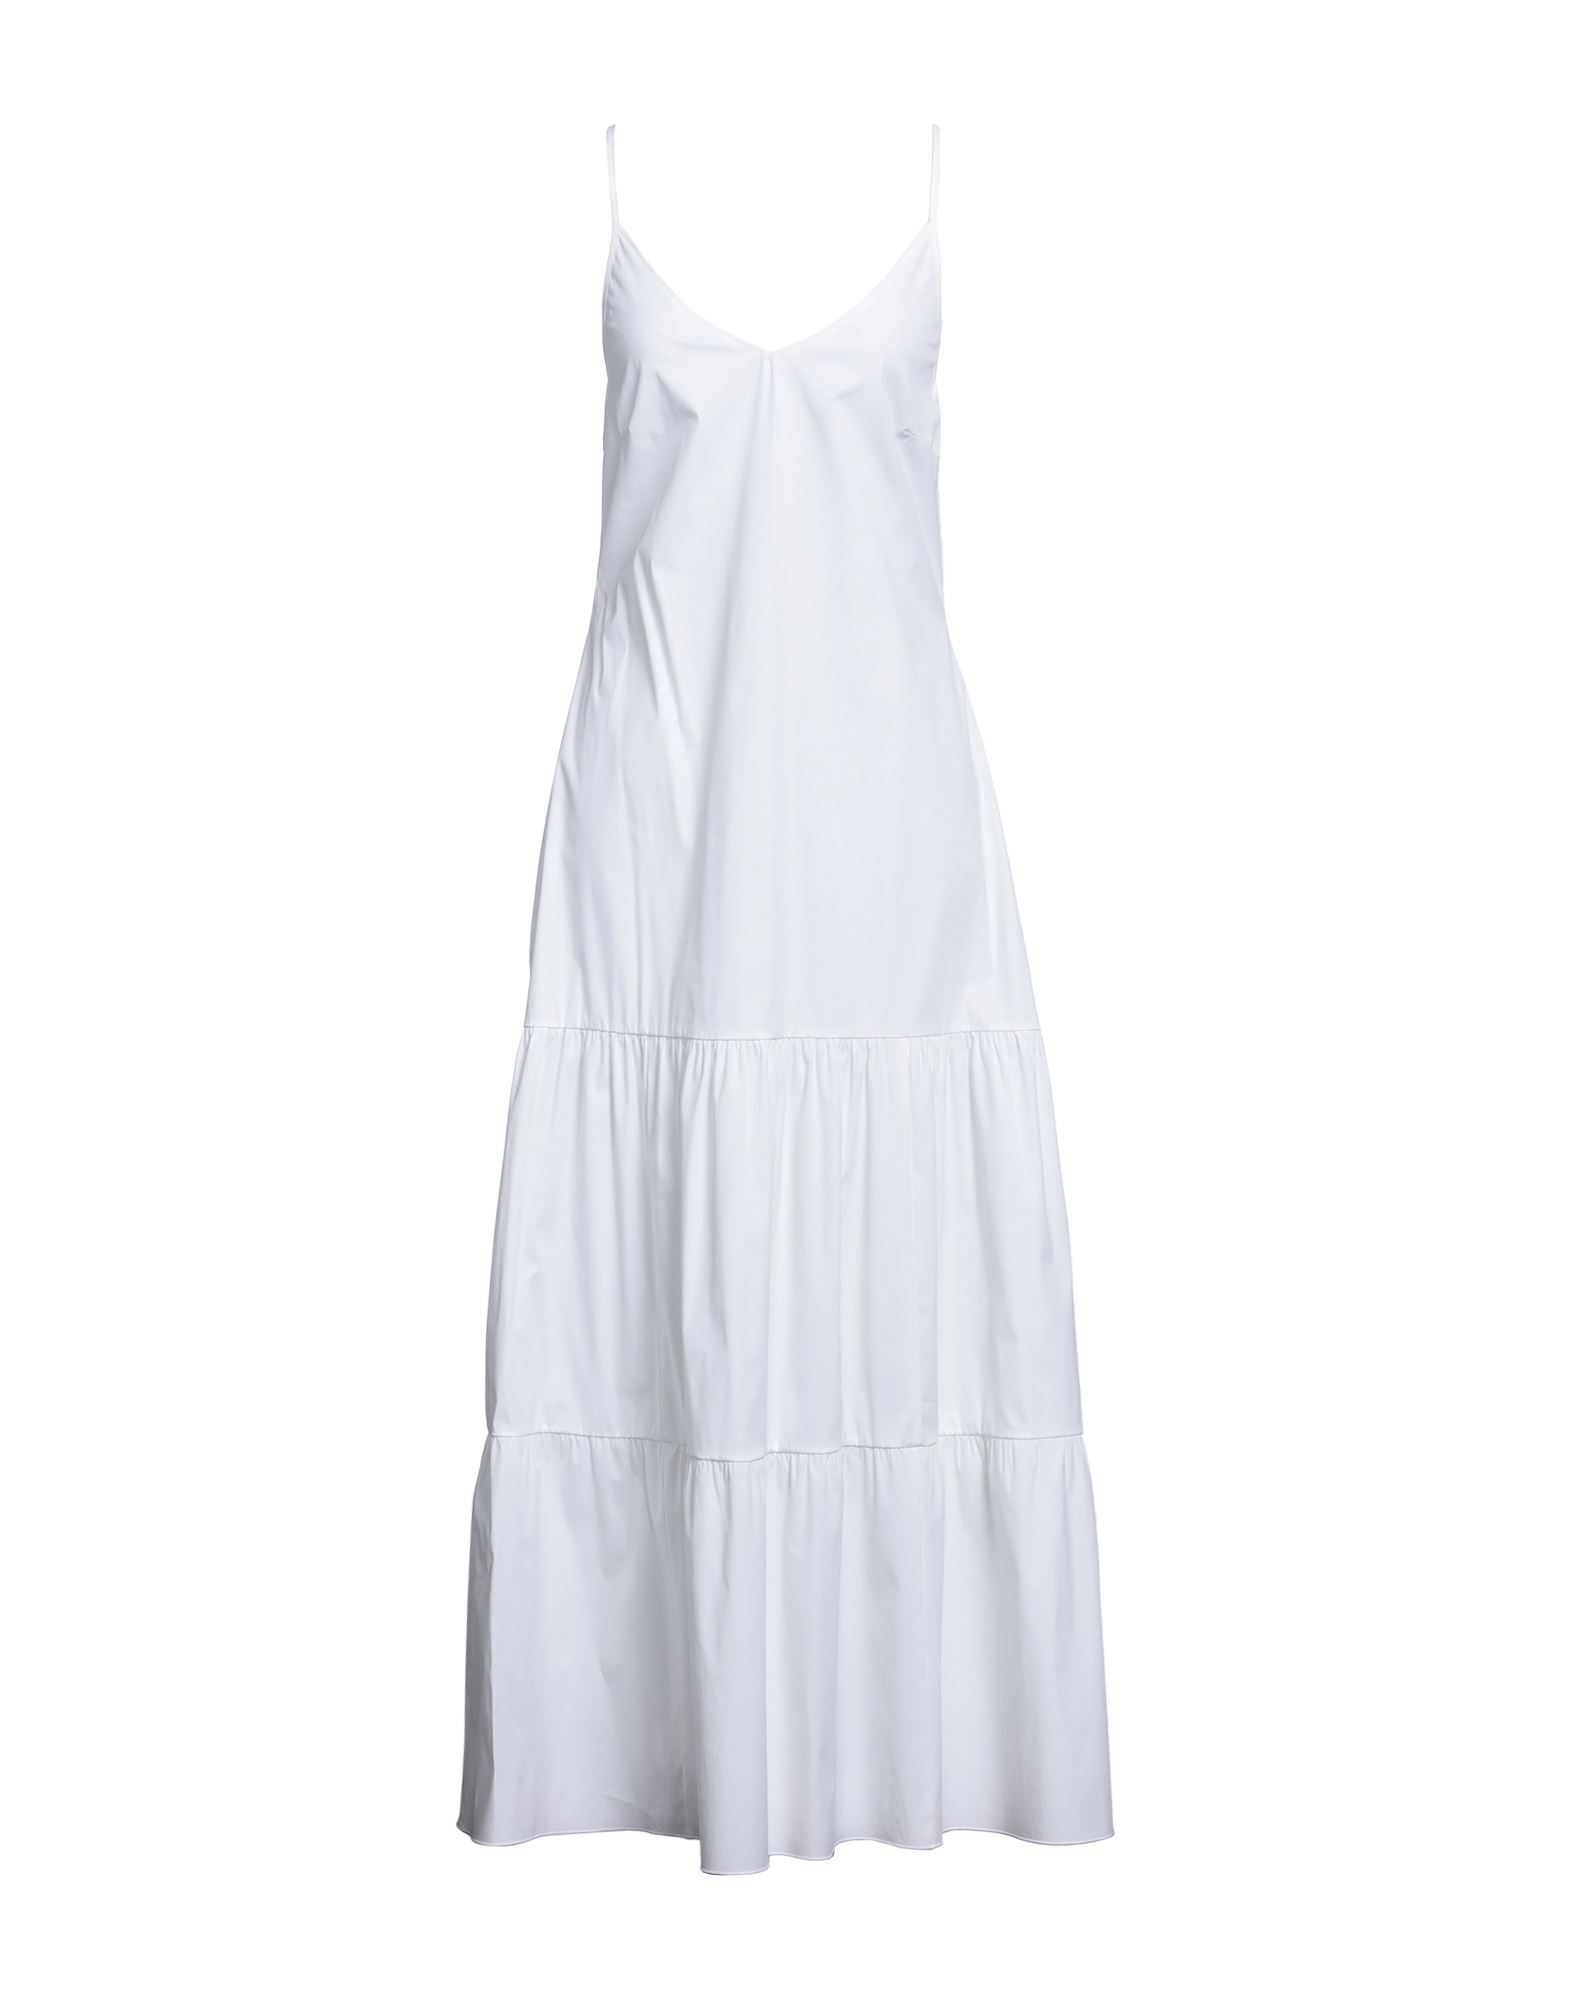 Carla G. Long Dresses In White